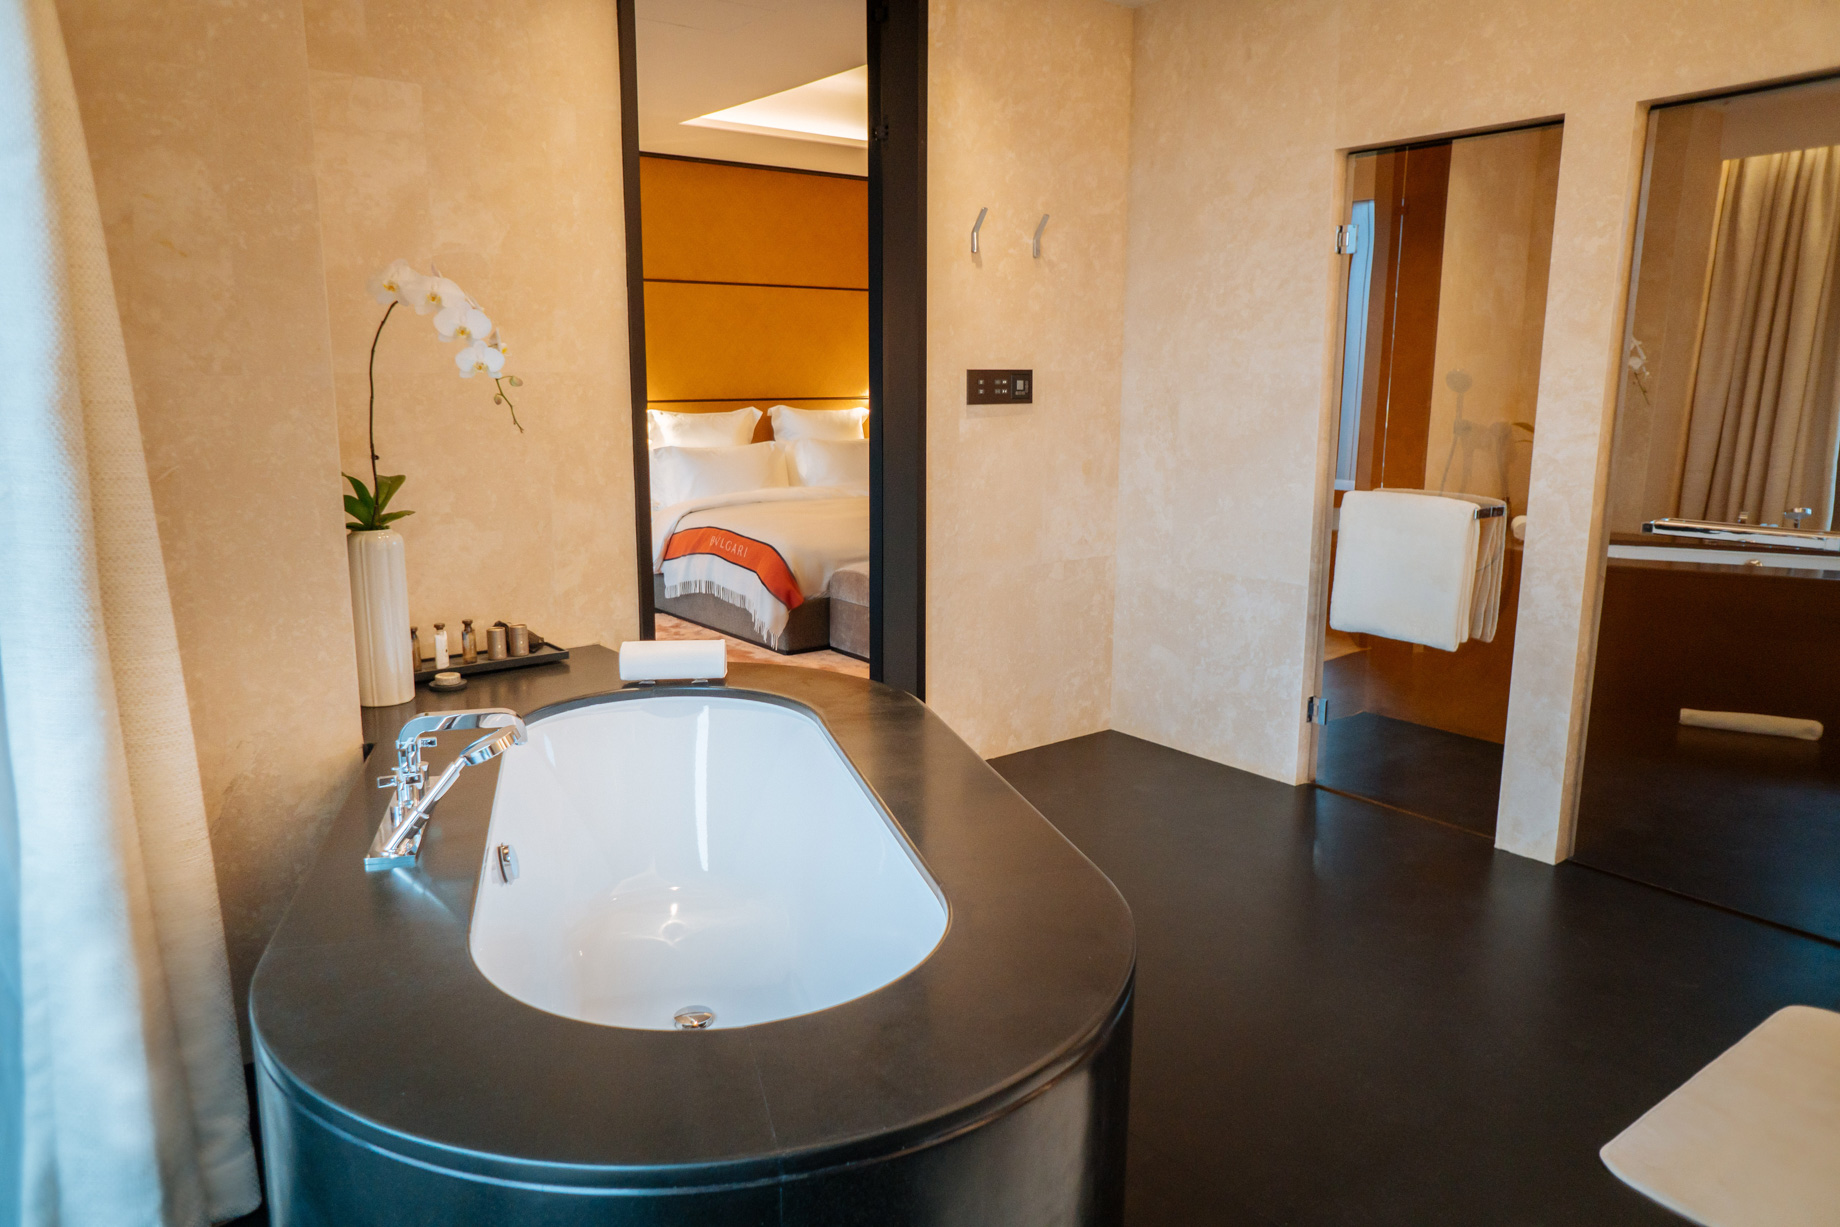 Bvlgari Hotel Beijing – Beijing, China – Guest Suite Bathroom Tub